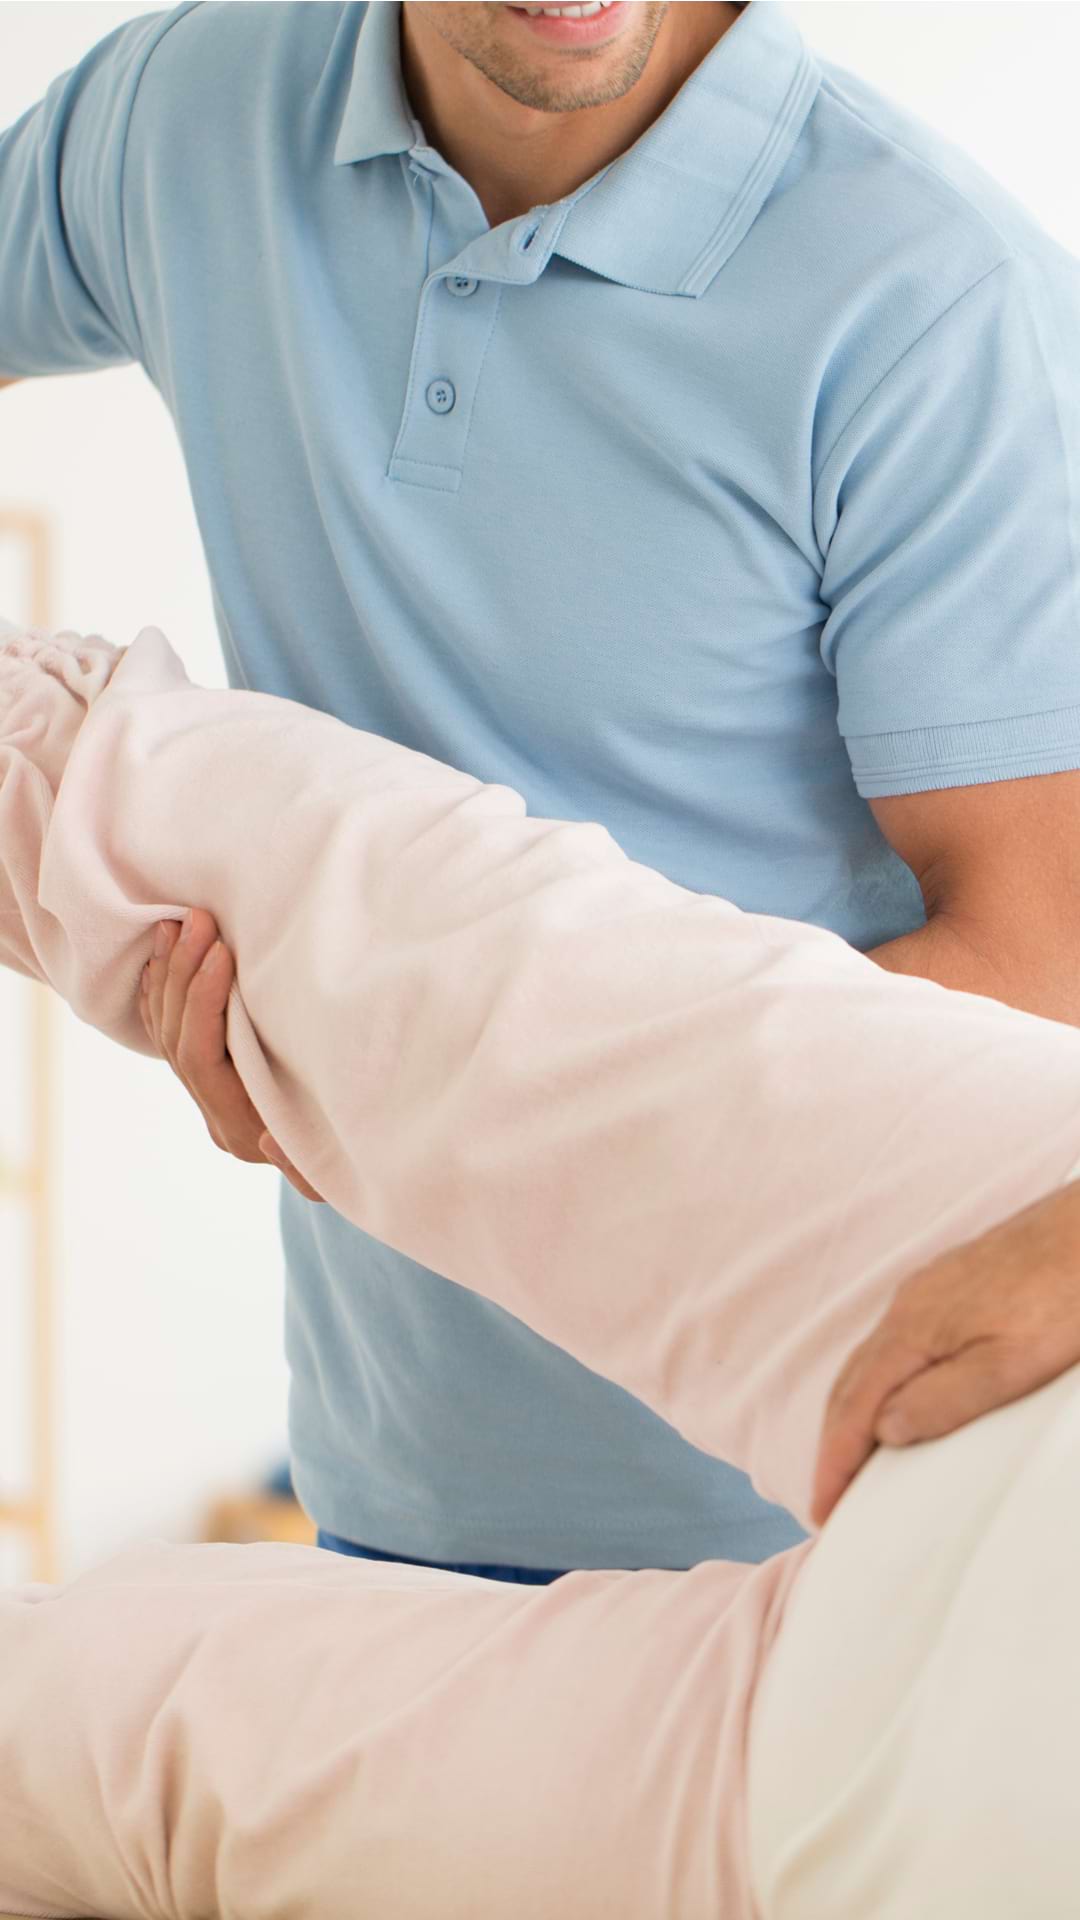 tratamentul eficient al articulației șoldului dureri severe de spate cum să trateze